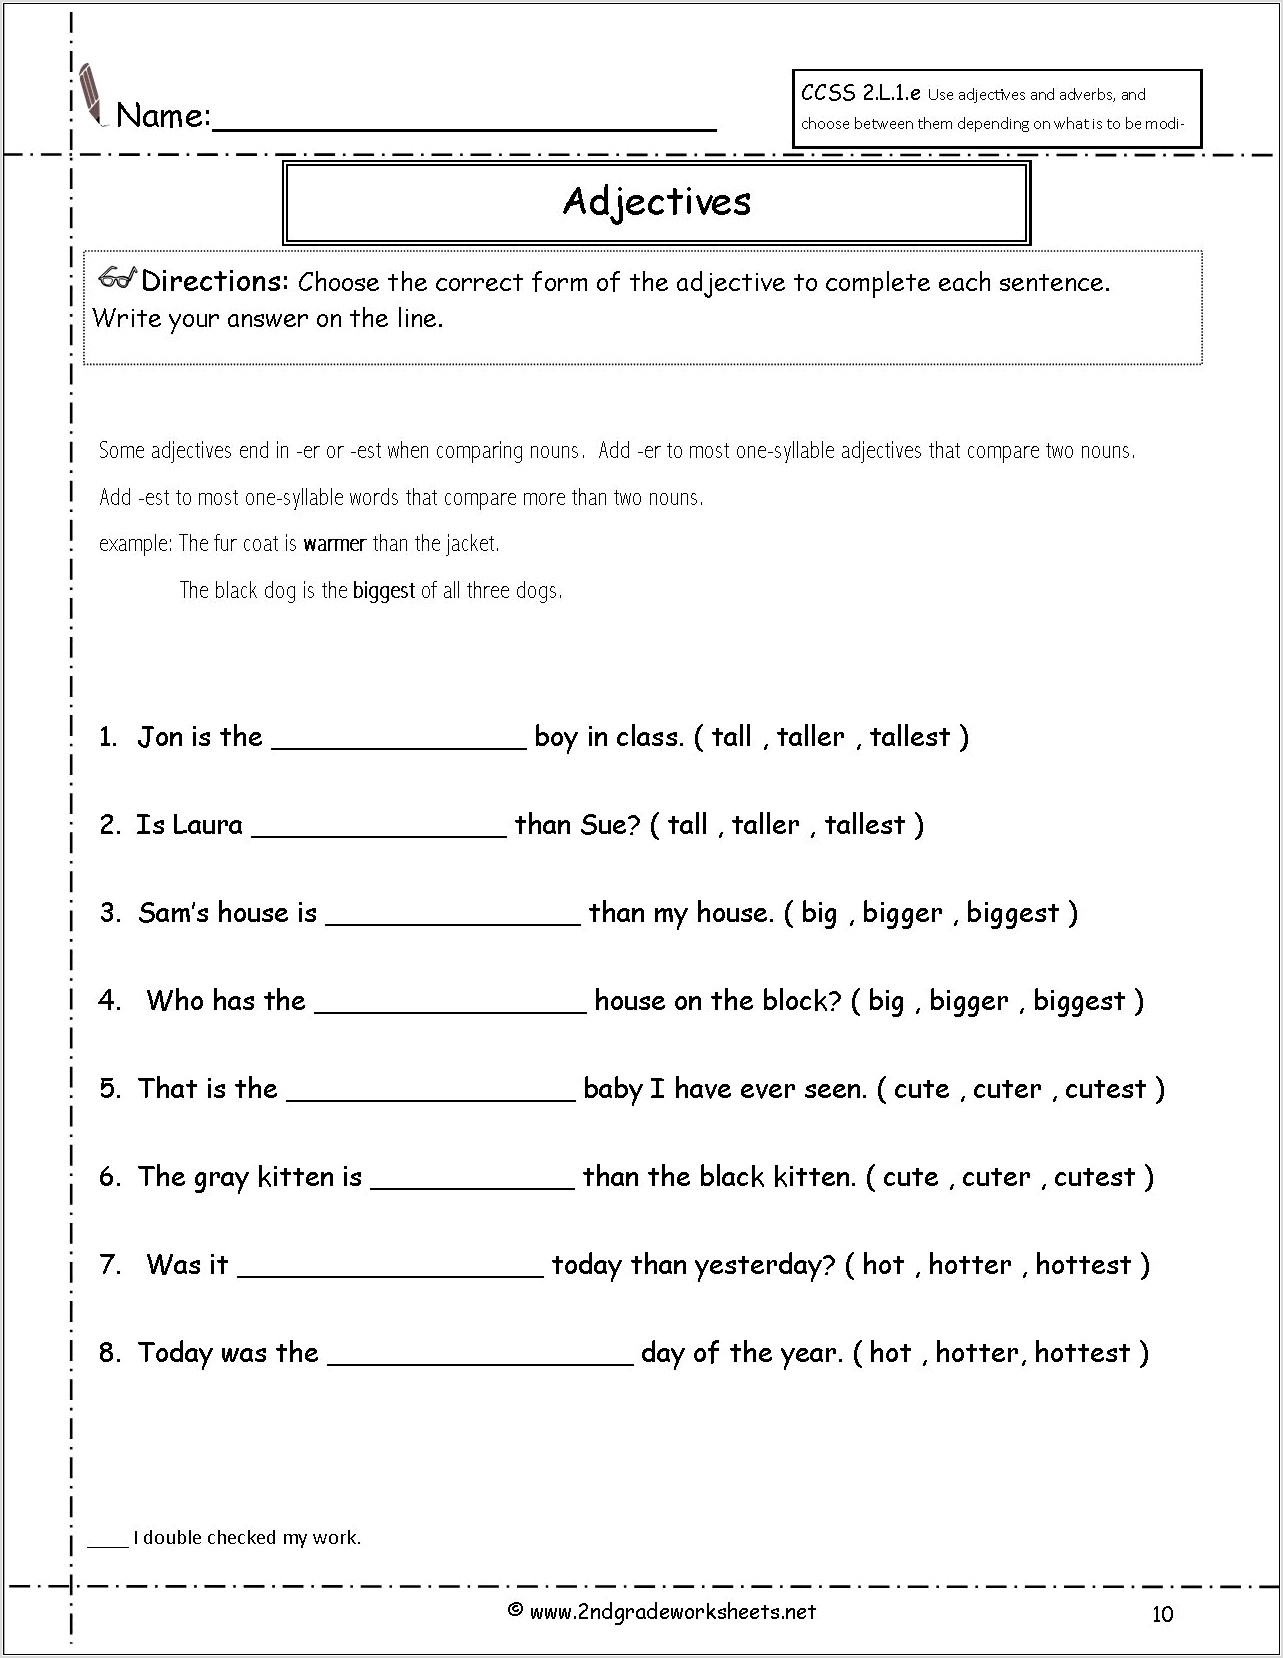 worksheets-for-grade-5-on-adjectives-worksheet-restiumani-resume